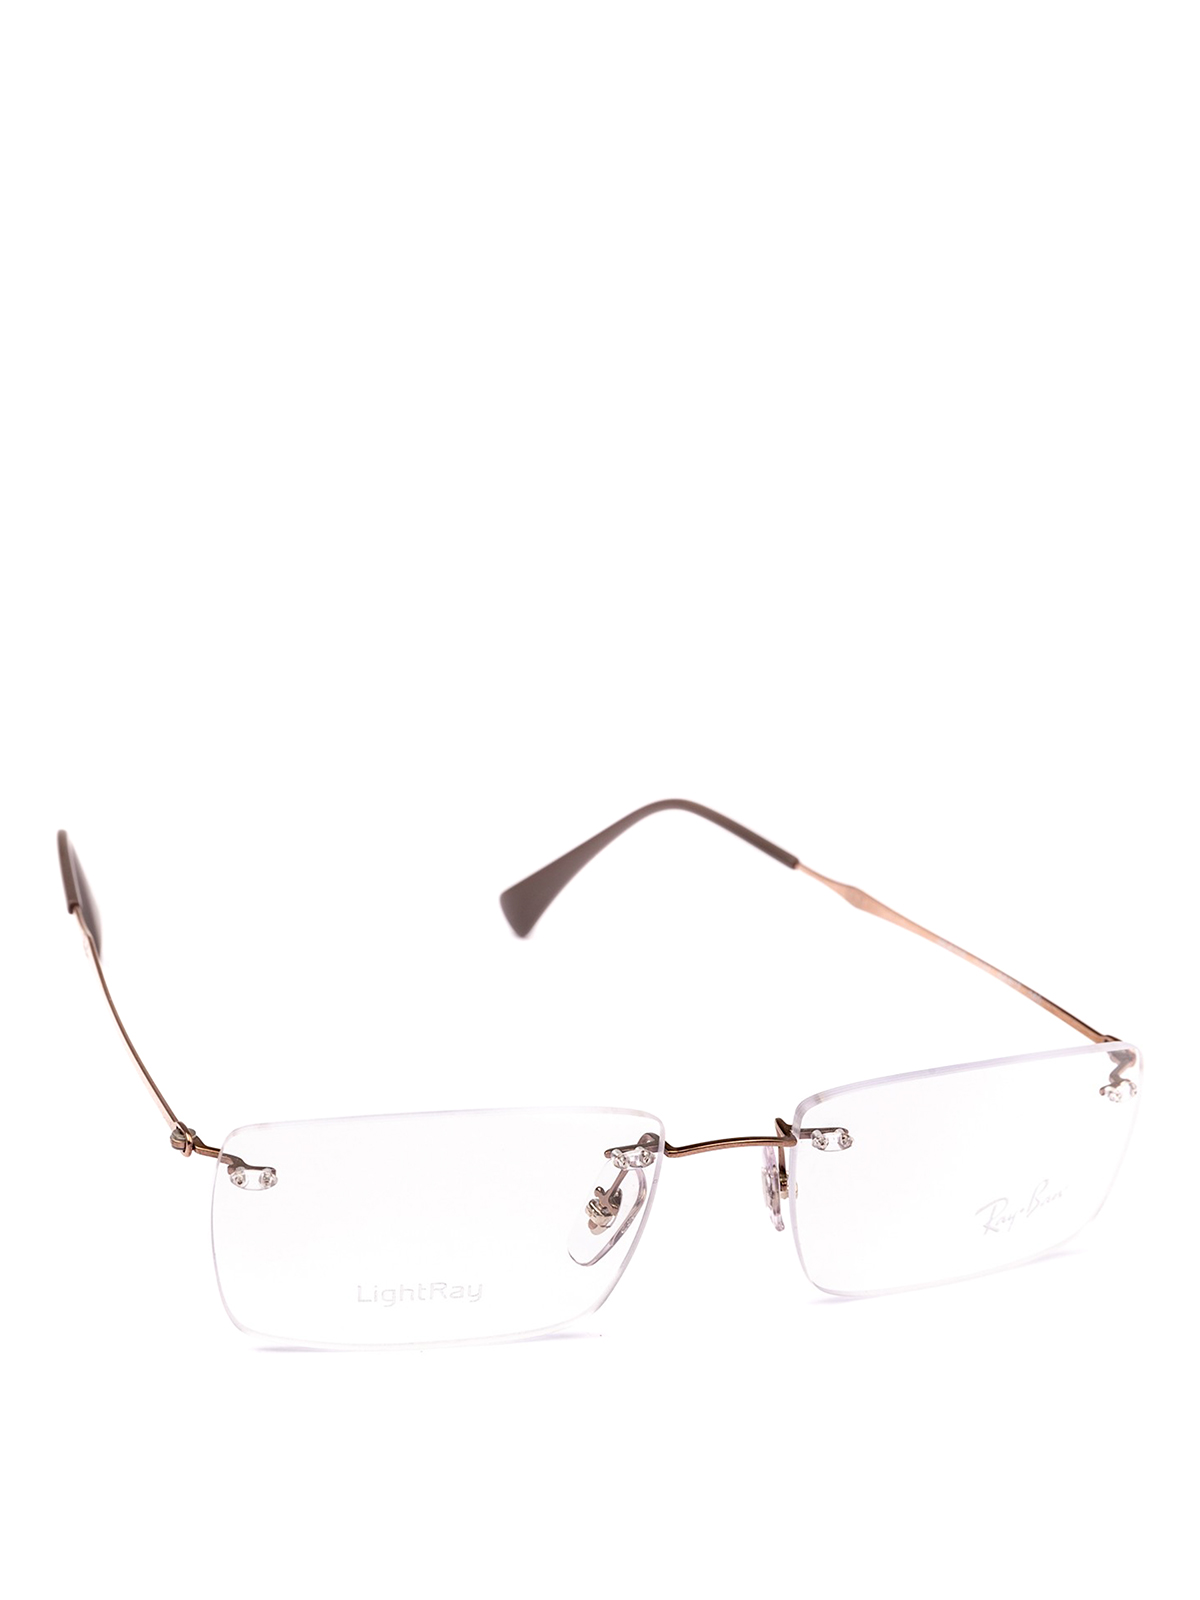 Frameless squared lenses bronze glasses 